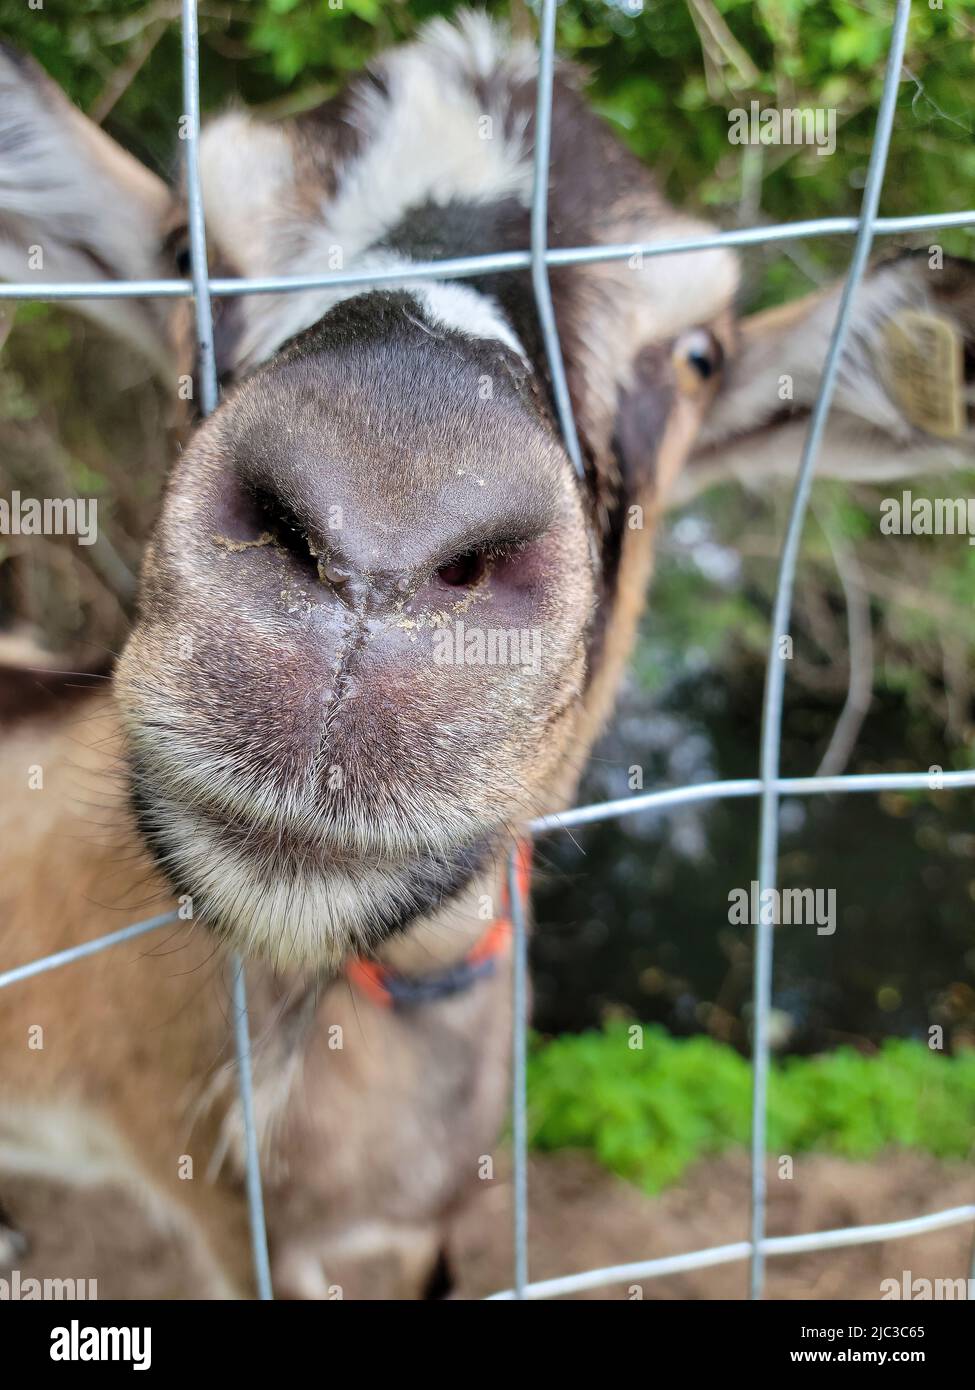 Cerca extremo de una nariz de cabra en una cerca de alambre Foto de stock